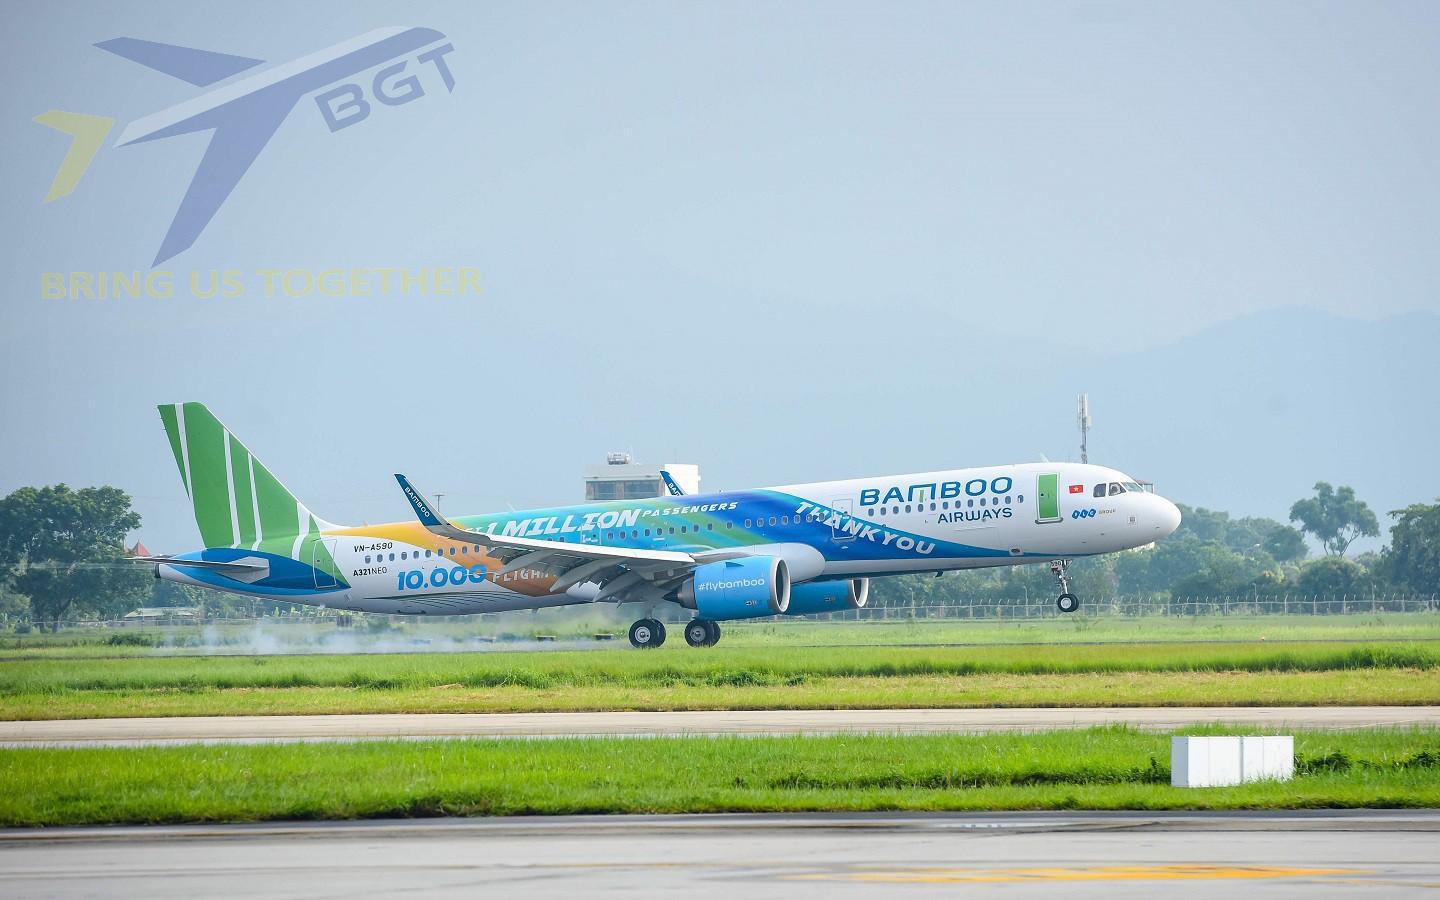 Hãng hàng không Bamboo Airways nhận bàn giao hai chiếc Boeing 787-9 Dreamliner